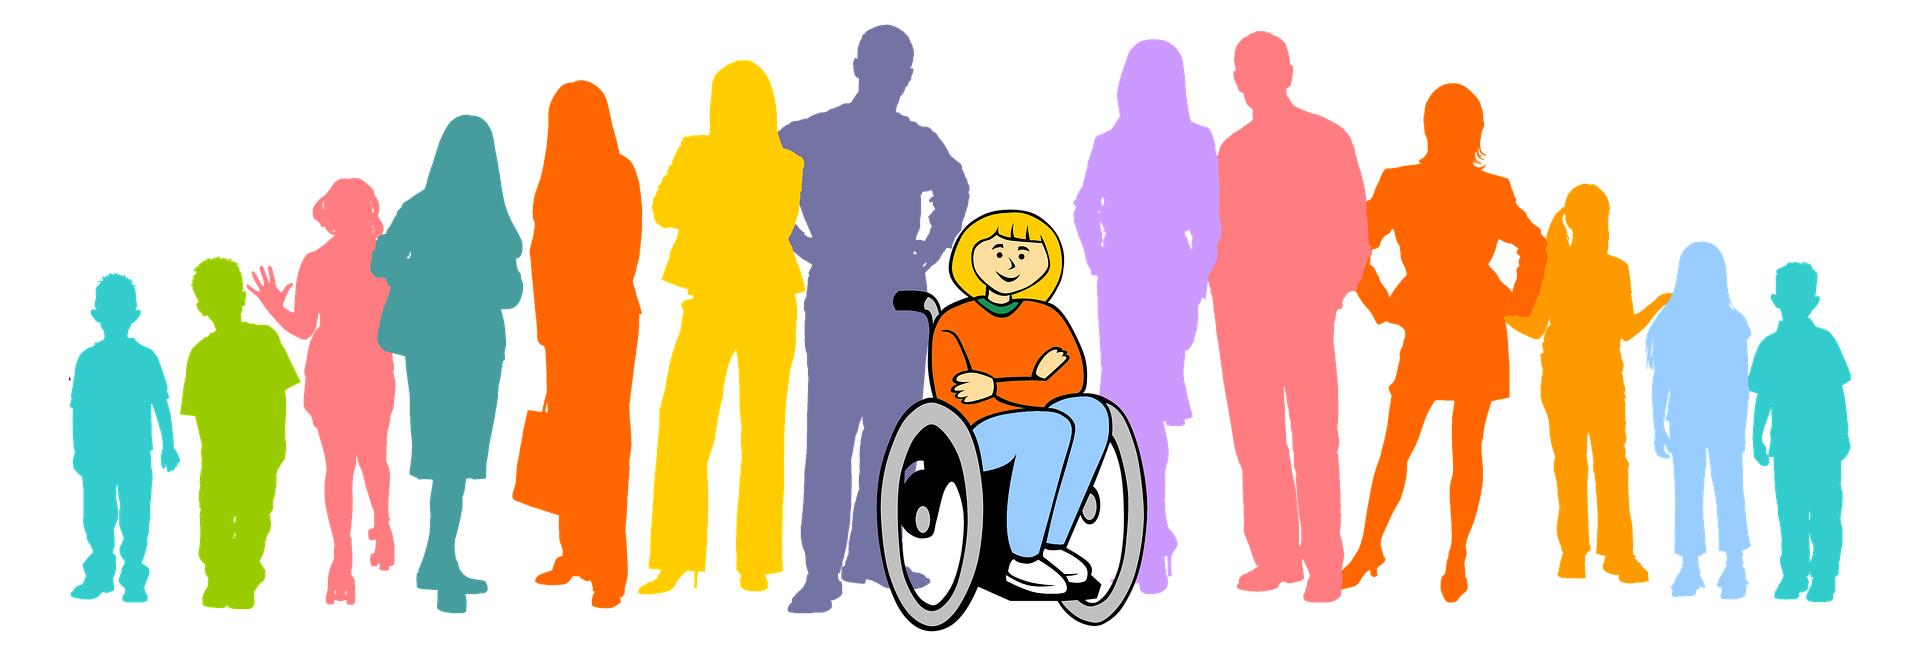 Инвалидность проблема общества. Люди с ограниченными возможностями картинки. Социализация людей с инвалидностью. Люди с ОВЗ. Общество инвалидов.